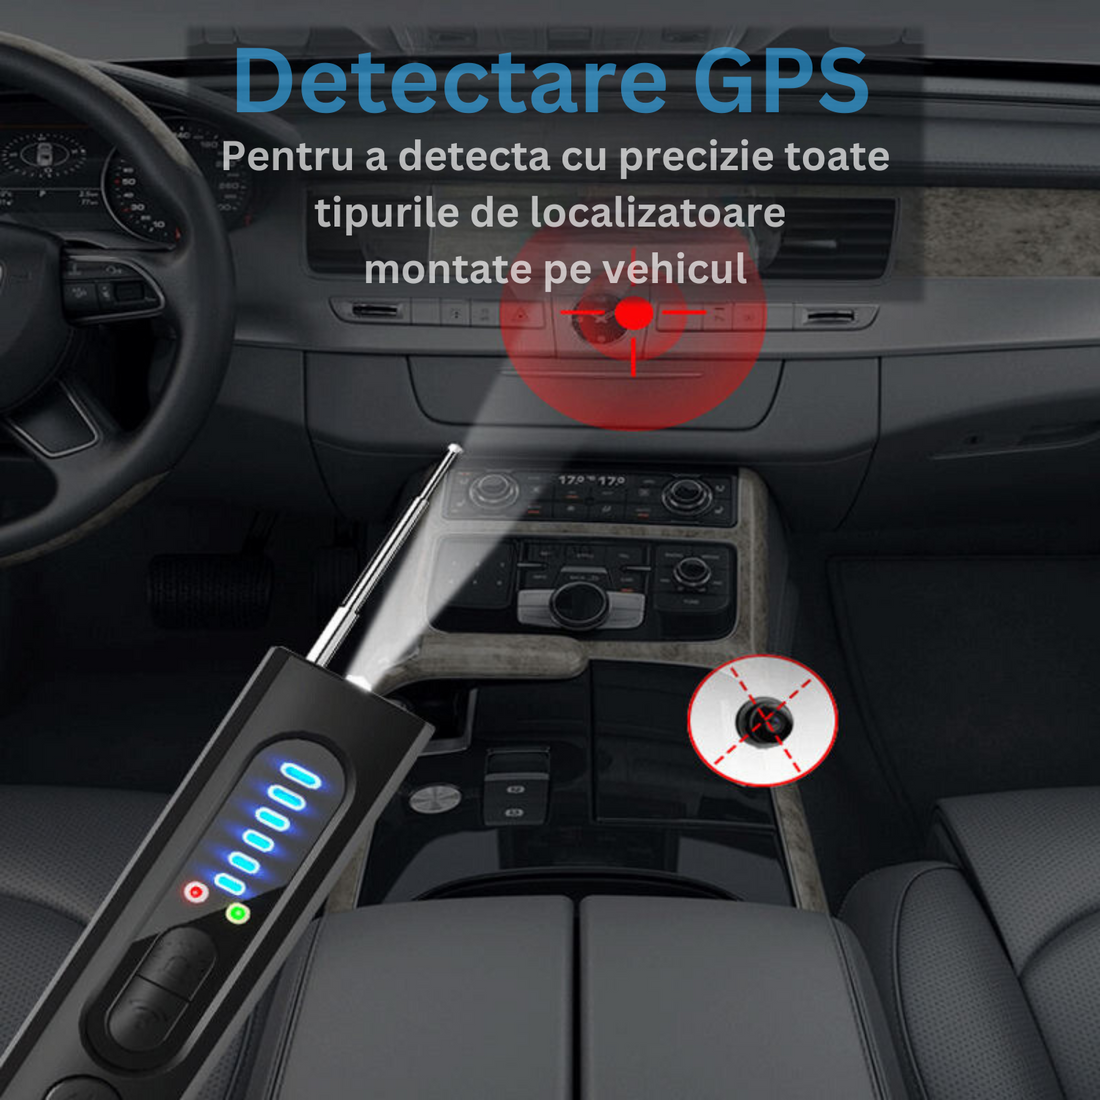 Detector camere ascunse, microfoane, localizator GPS, reportofoane - X13